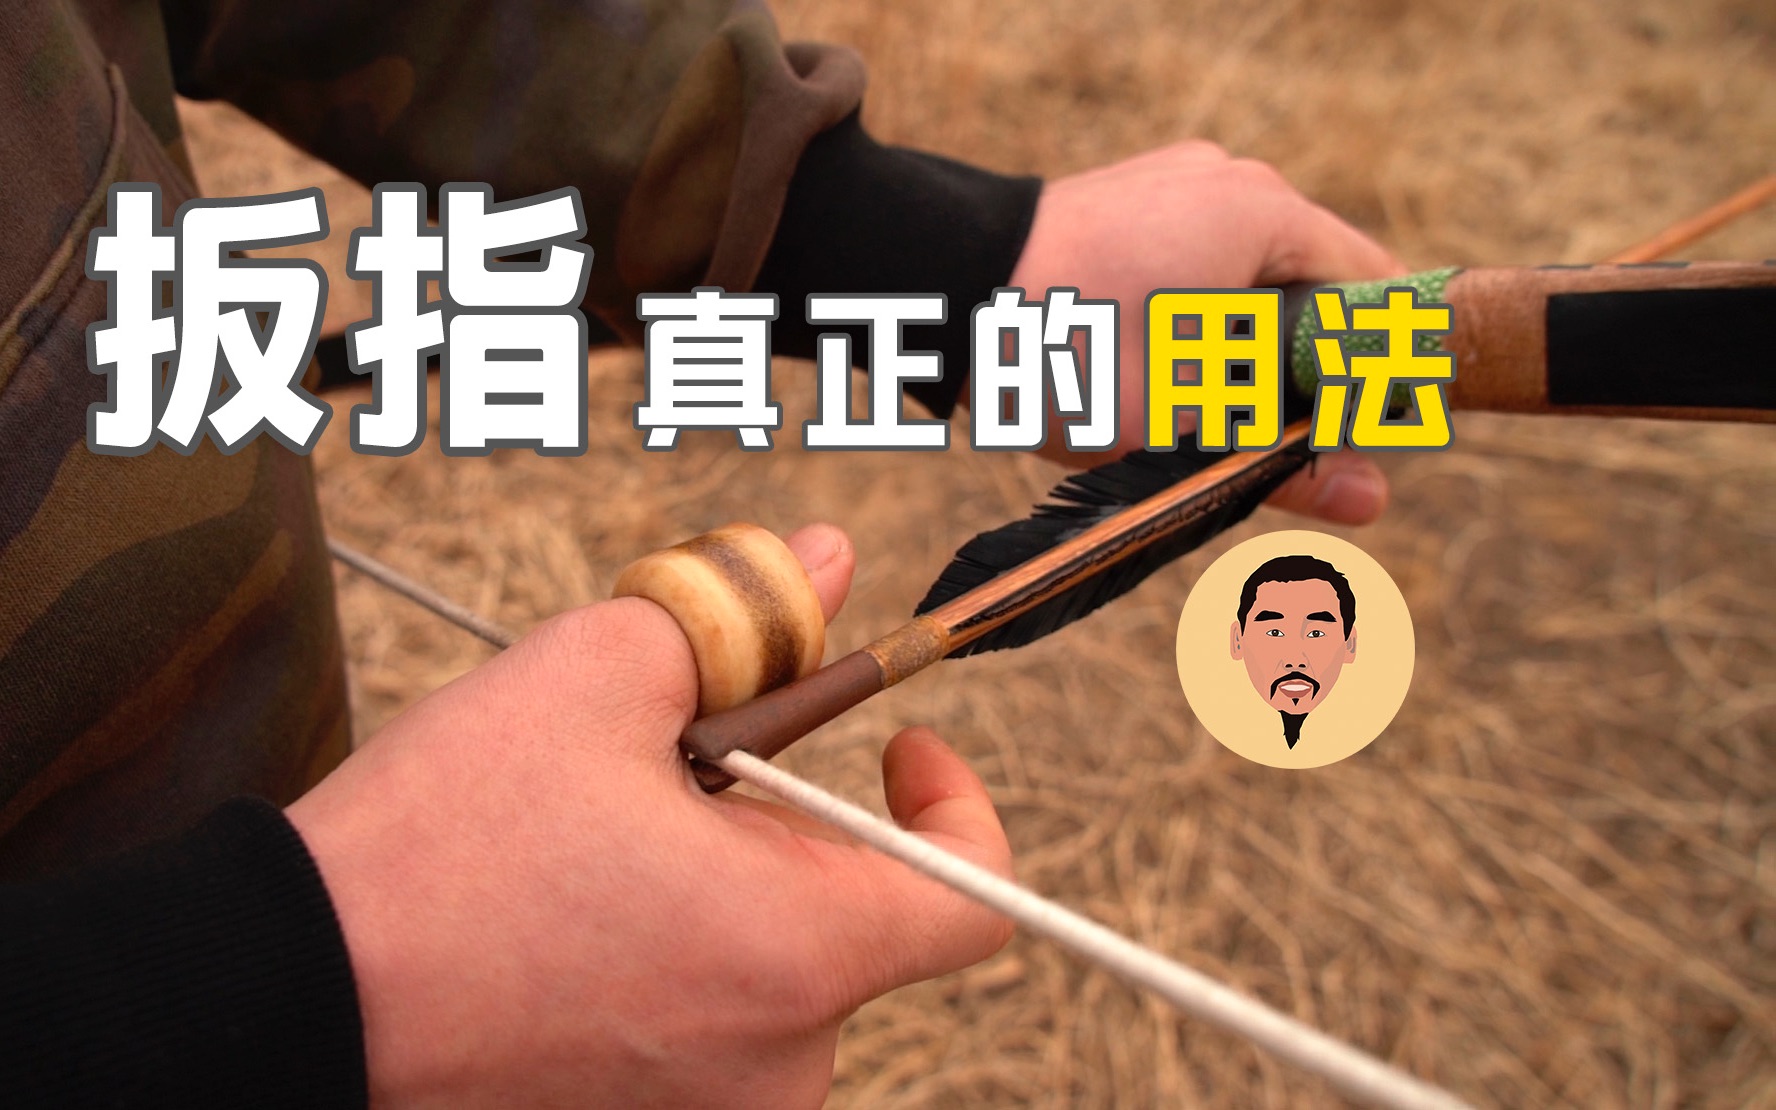 揭晓扳指的真正用法!中国传统弓都得搭配扳指,演示开弓射箭!